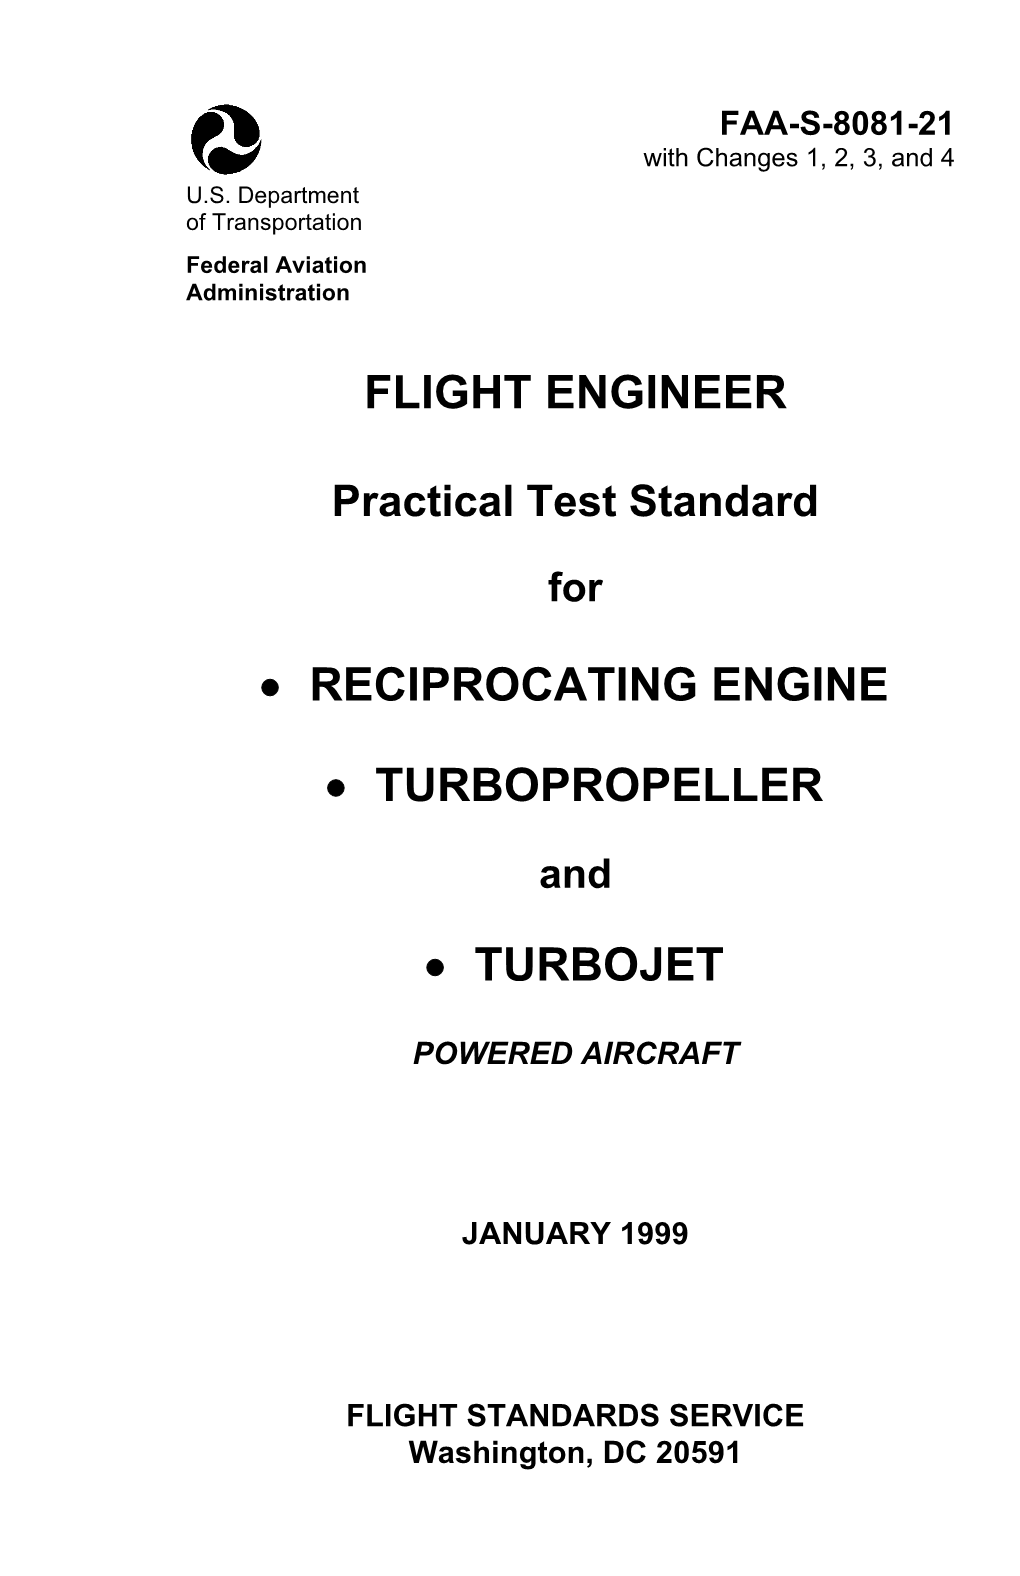 Flight Engineer